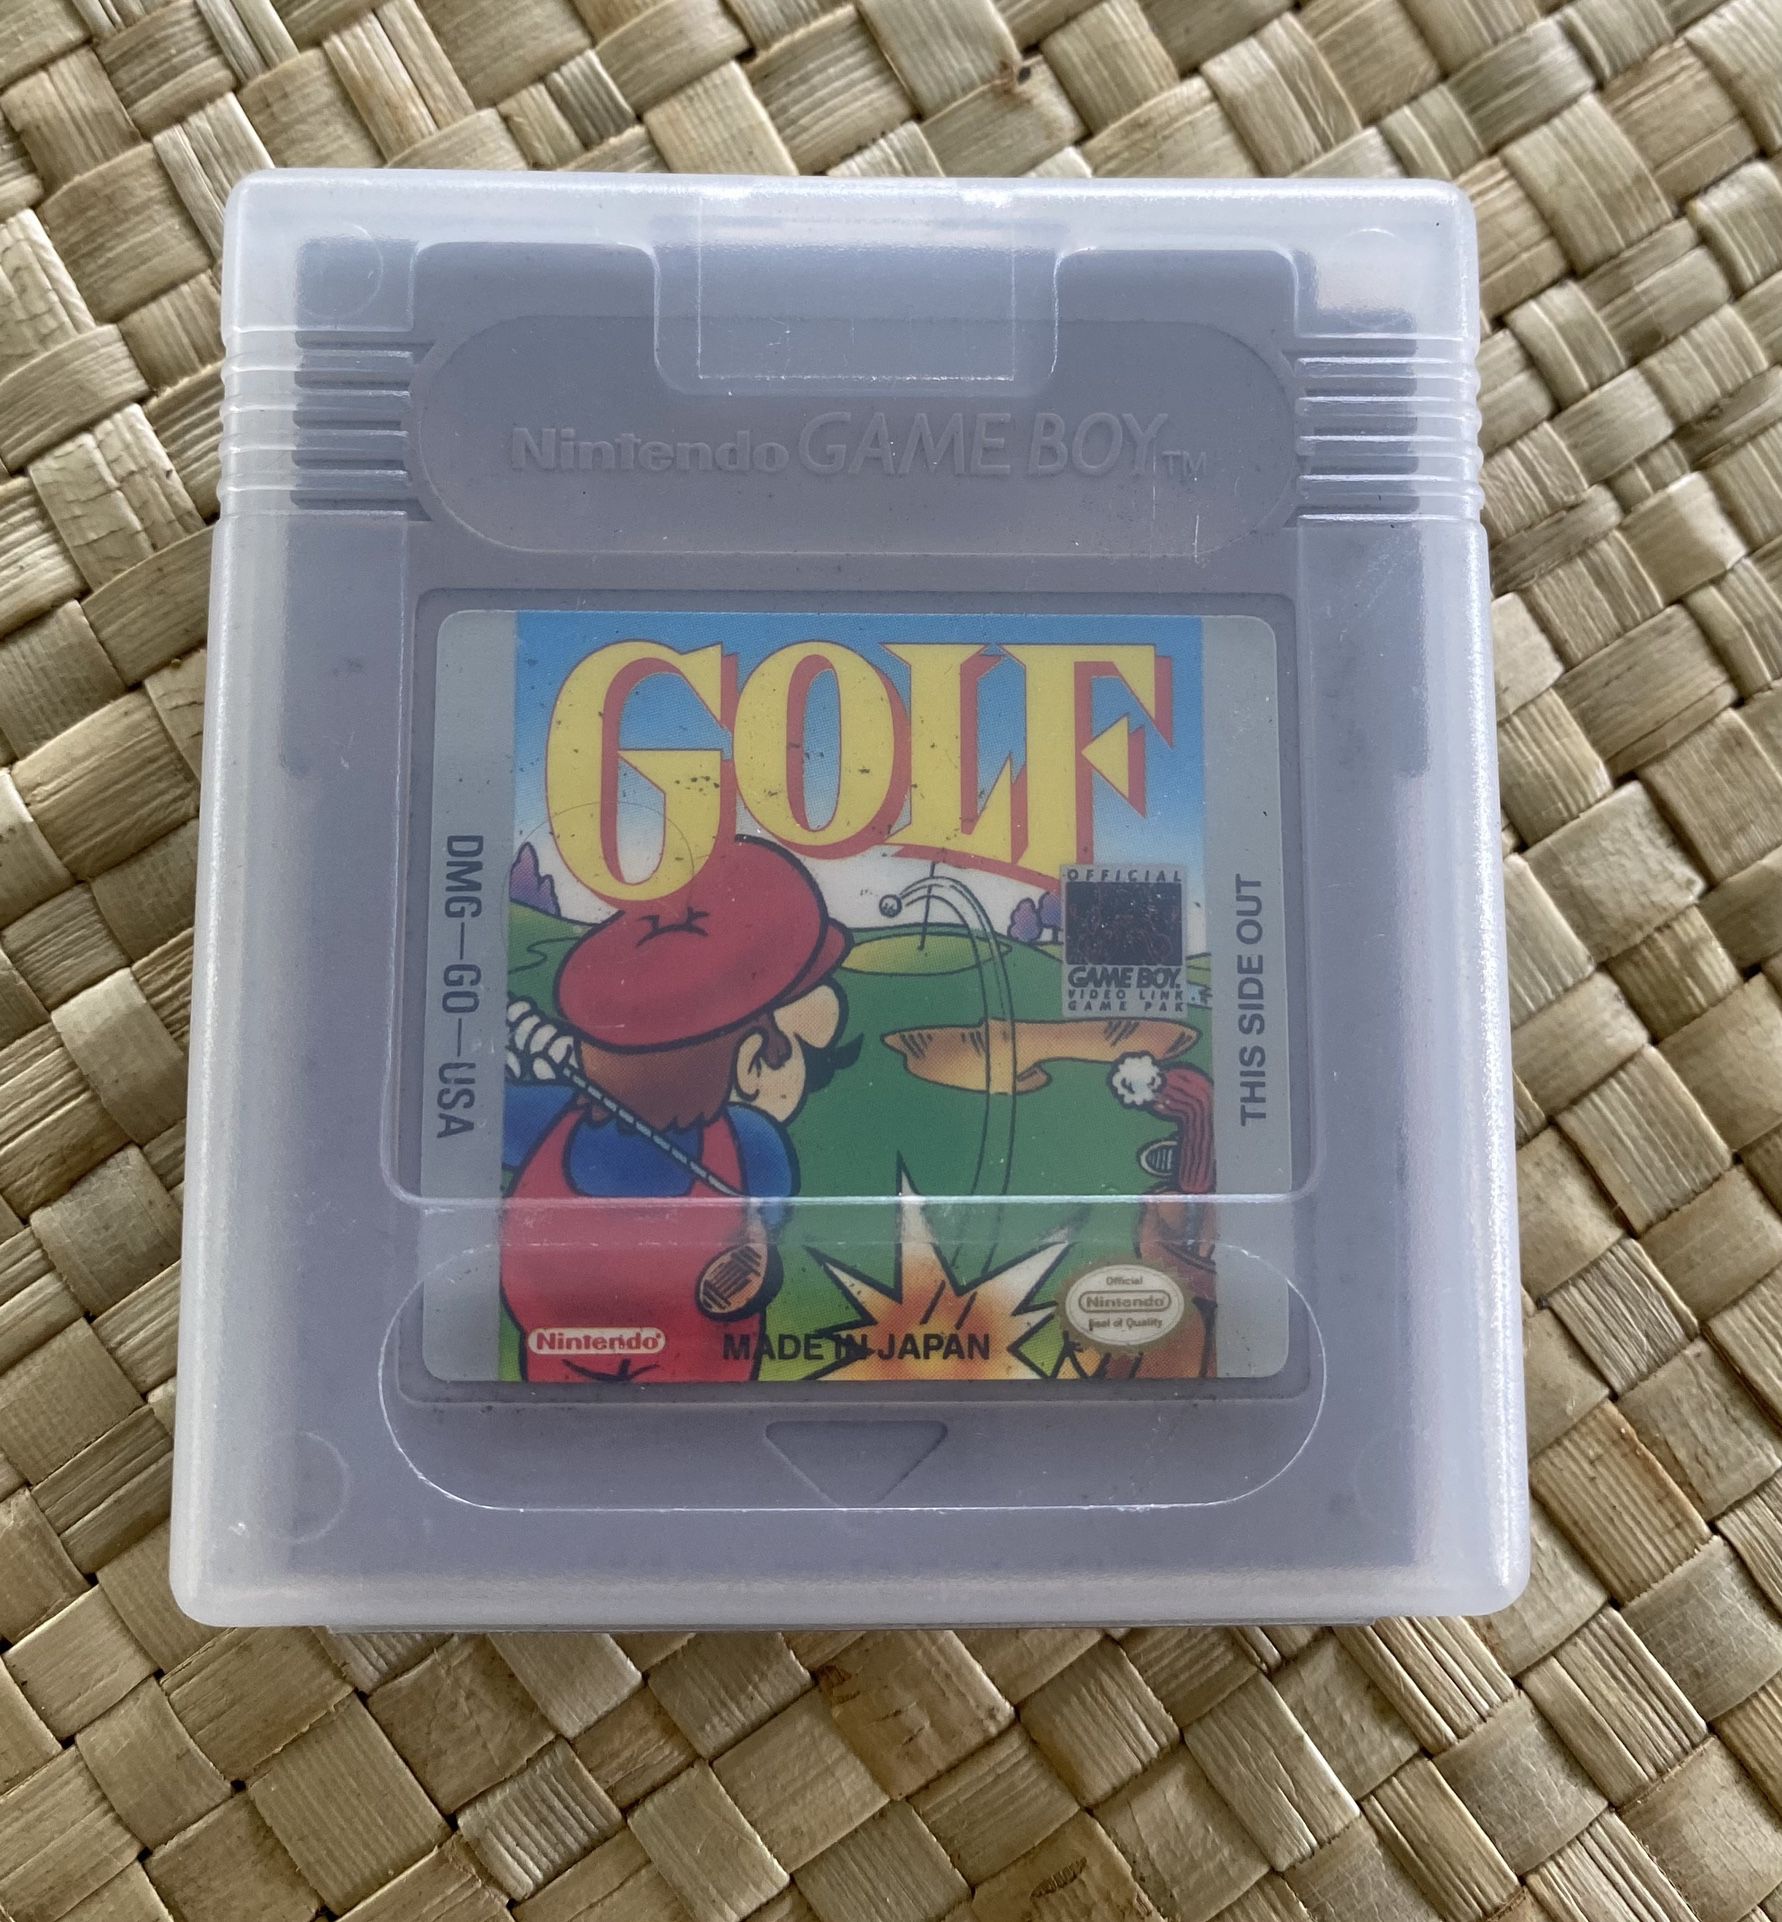 Nintendo Gameboy Mario Golf With Case 